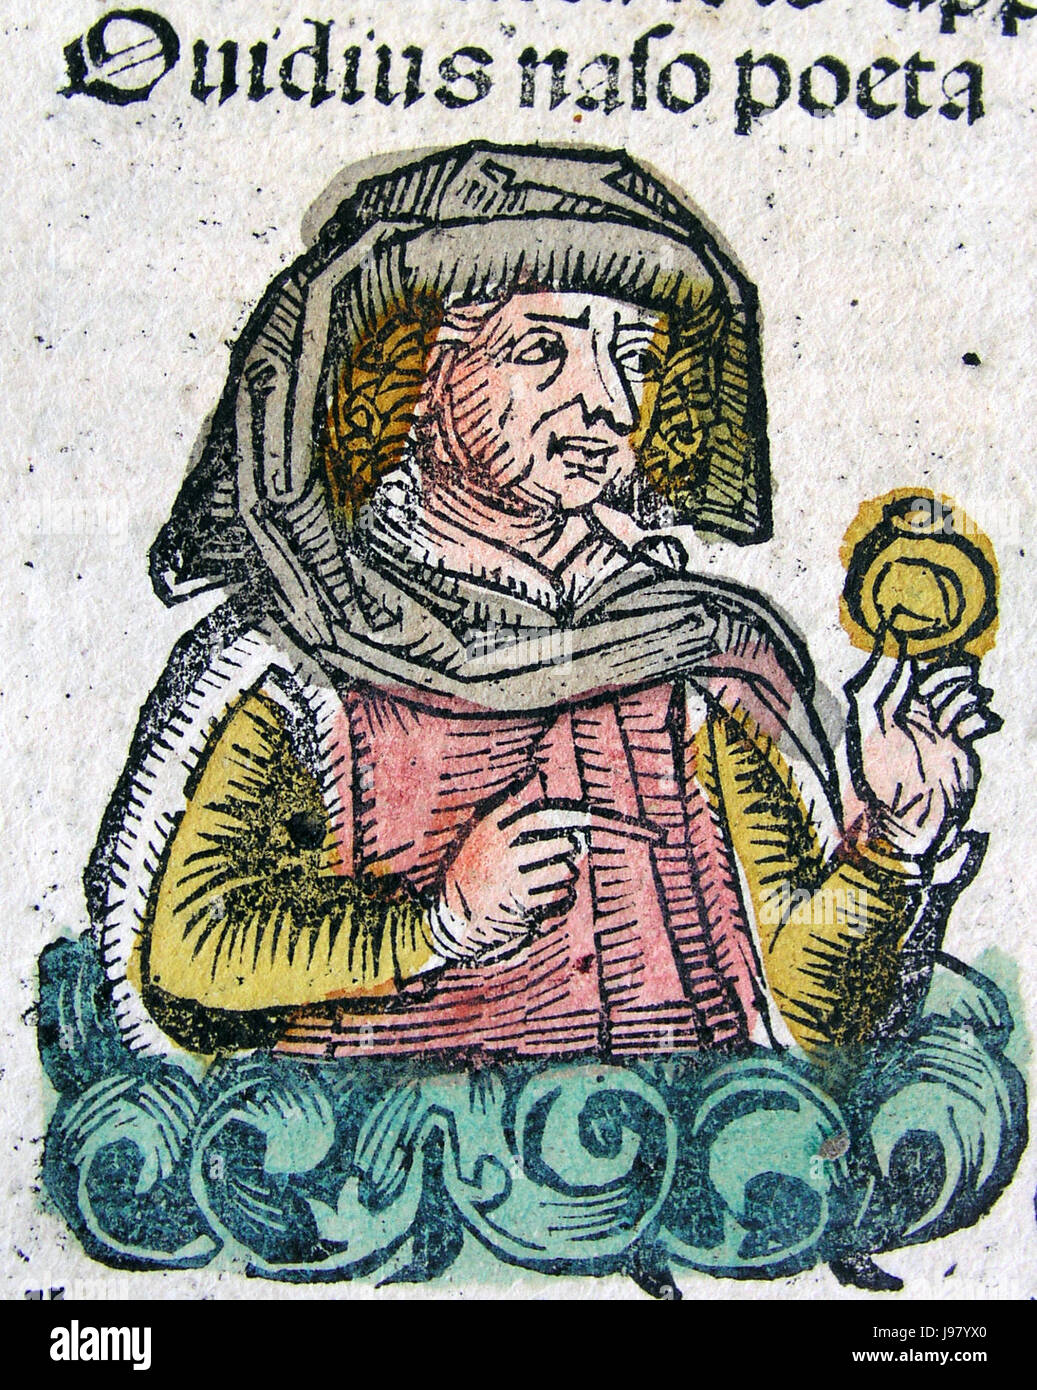 Publius Ovidius Naso en la Crónica de Nuremberg XCIIIv Foto de stock